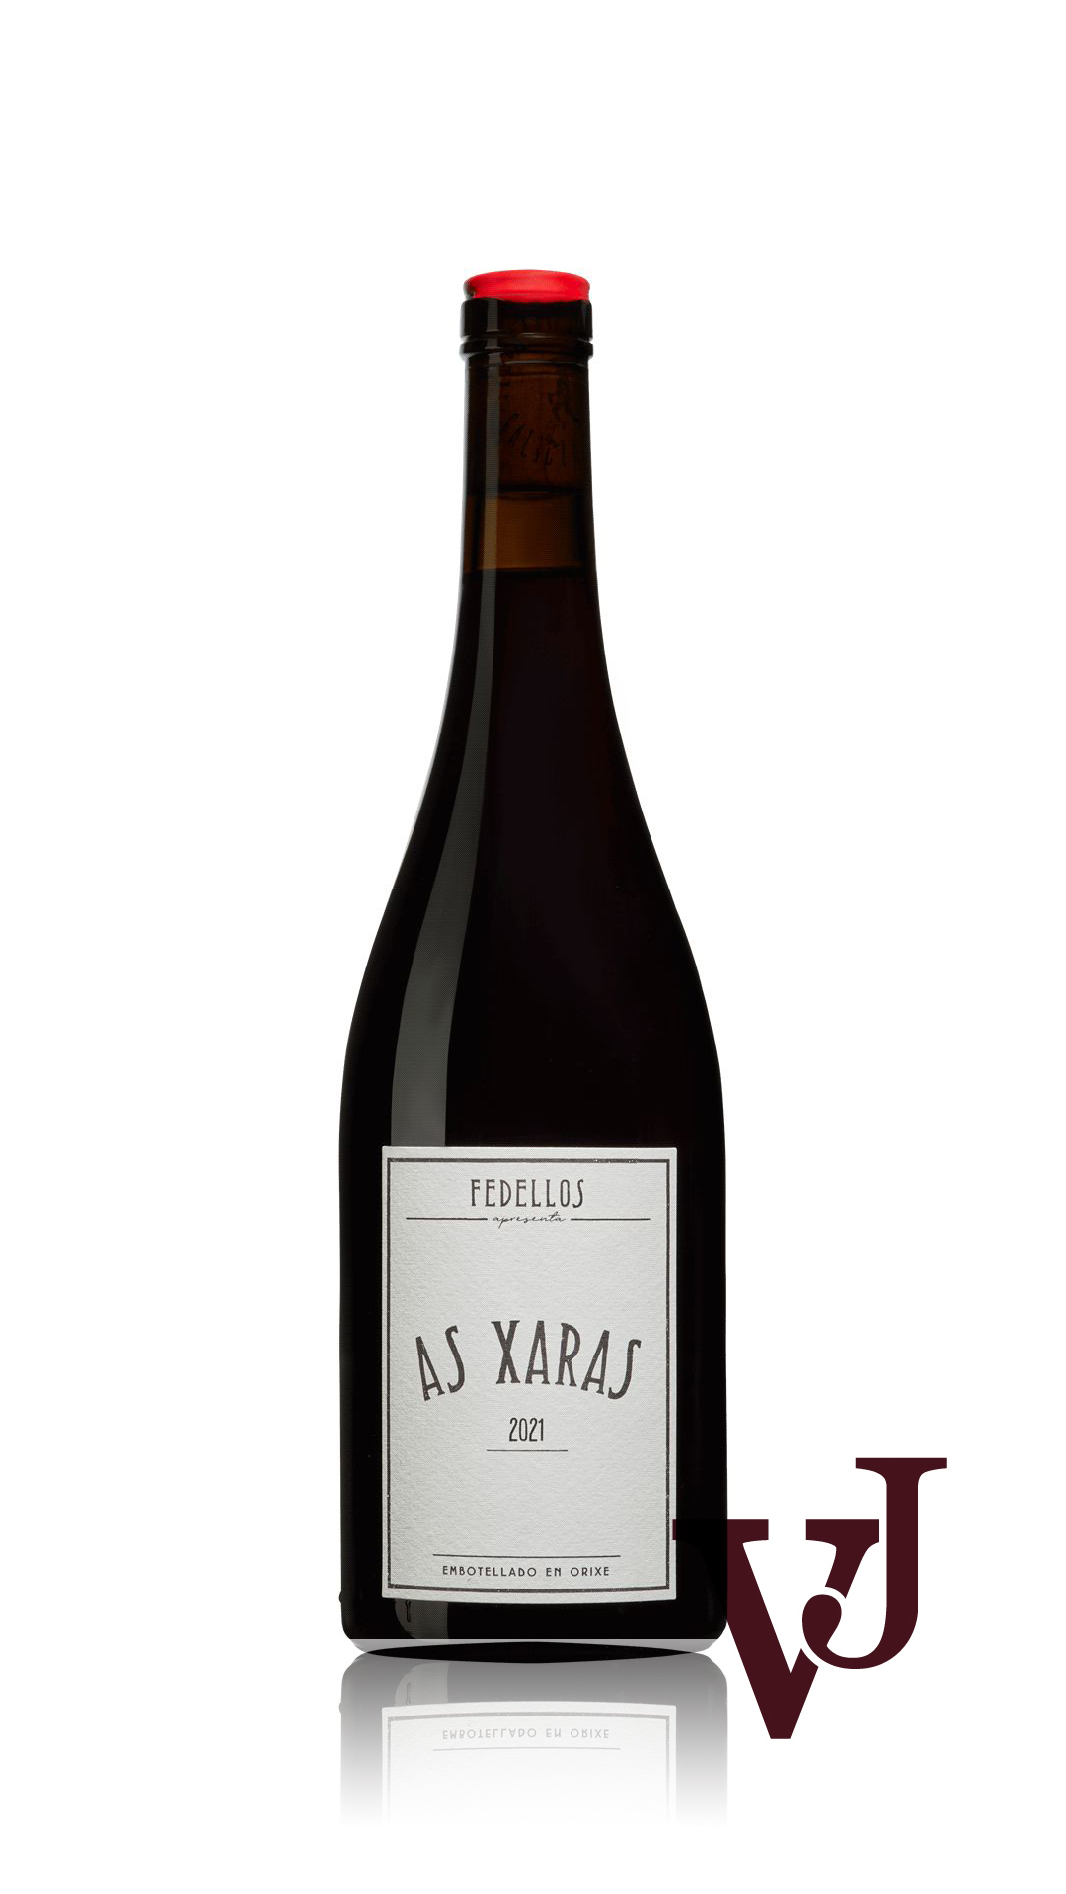 Rött Vin - As Xaras Fedellos 2021 artikel nummer 9215801 från producenten Fedellos från Spanien.